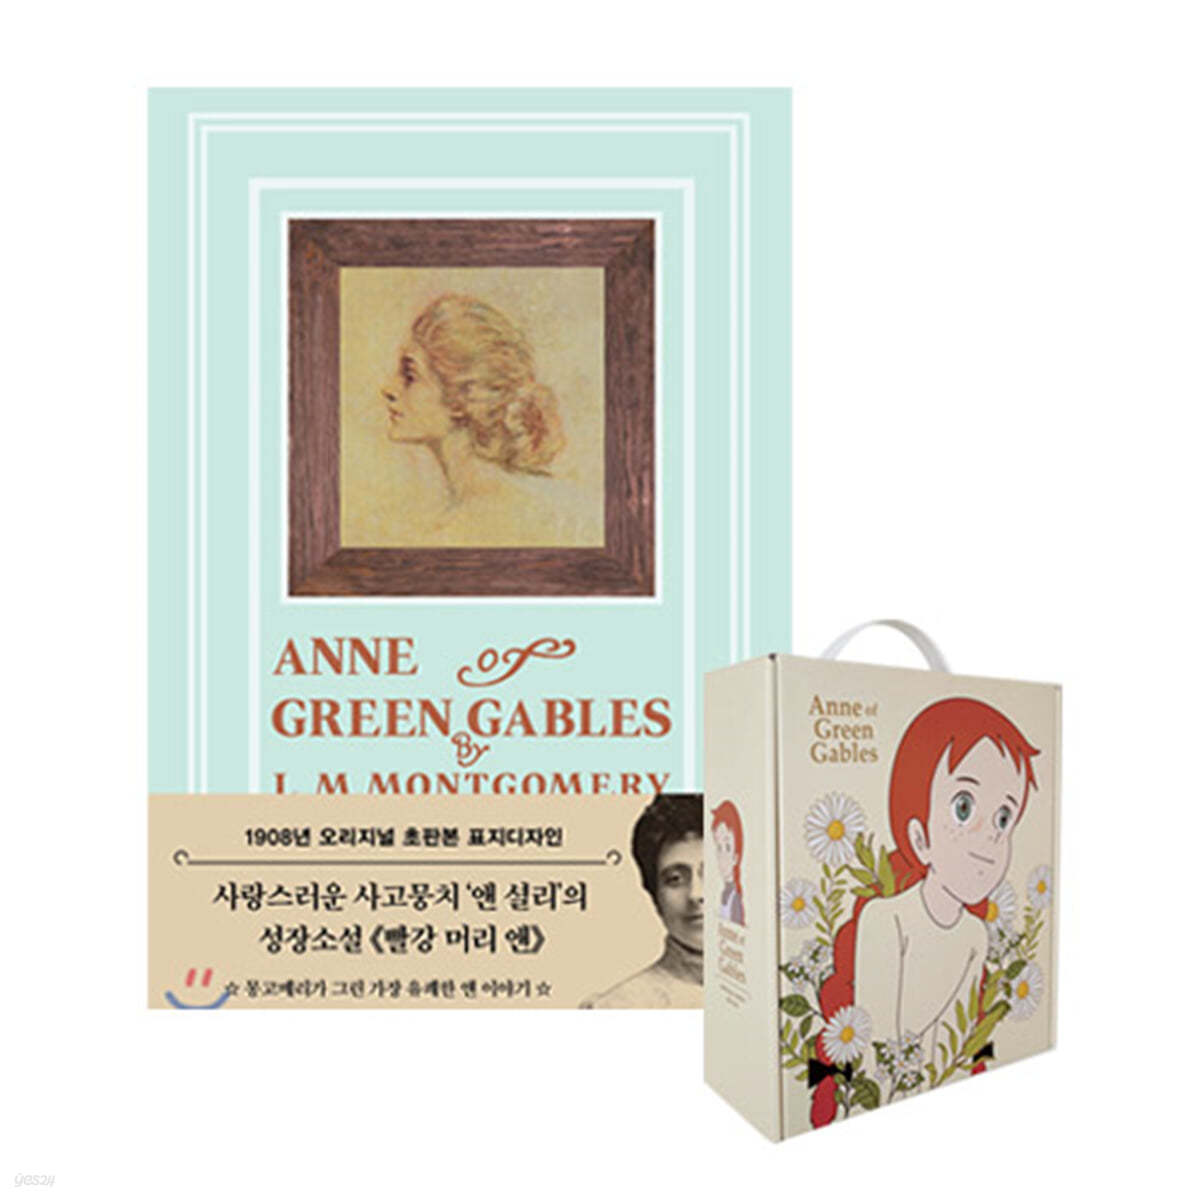 [종료] [YES24] 초판본 빨강 머리 앤 + 빨강 머리앤 드립백 커피 선물 세트